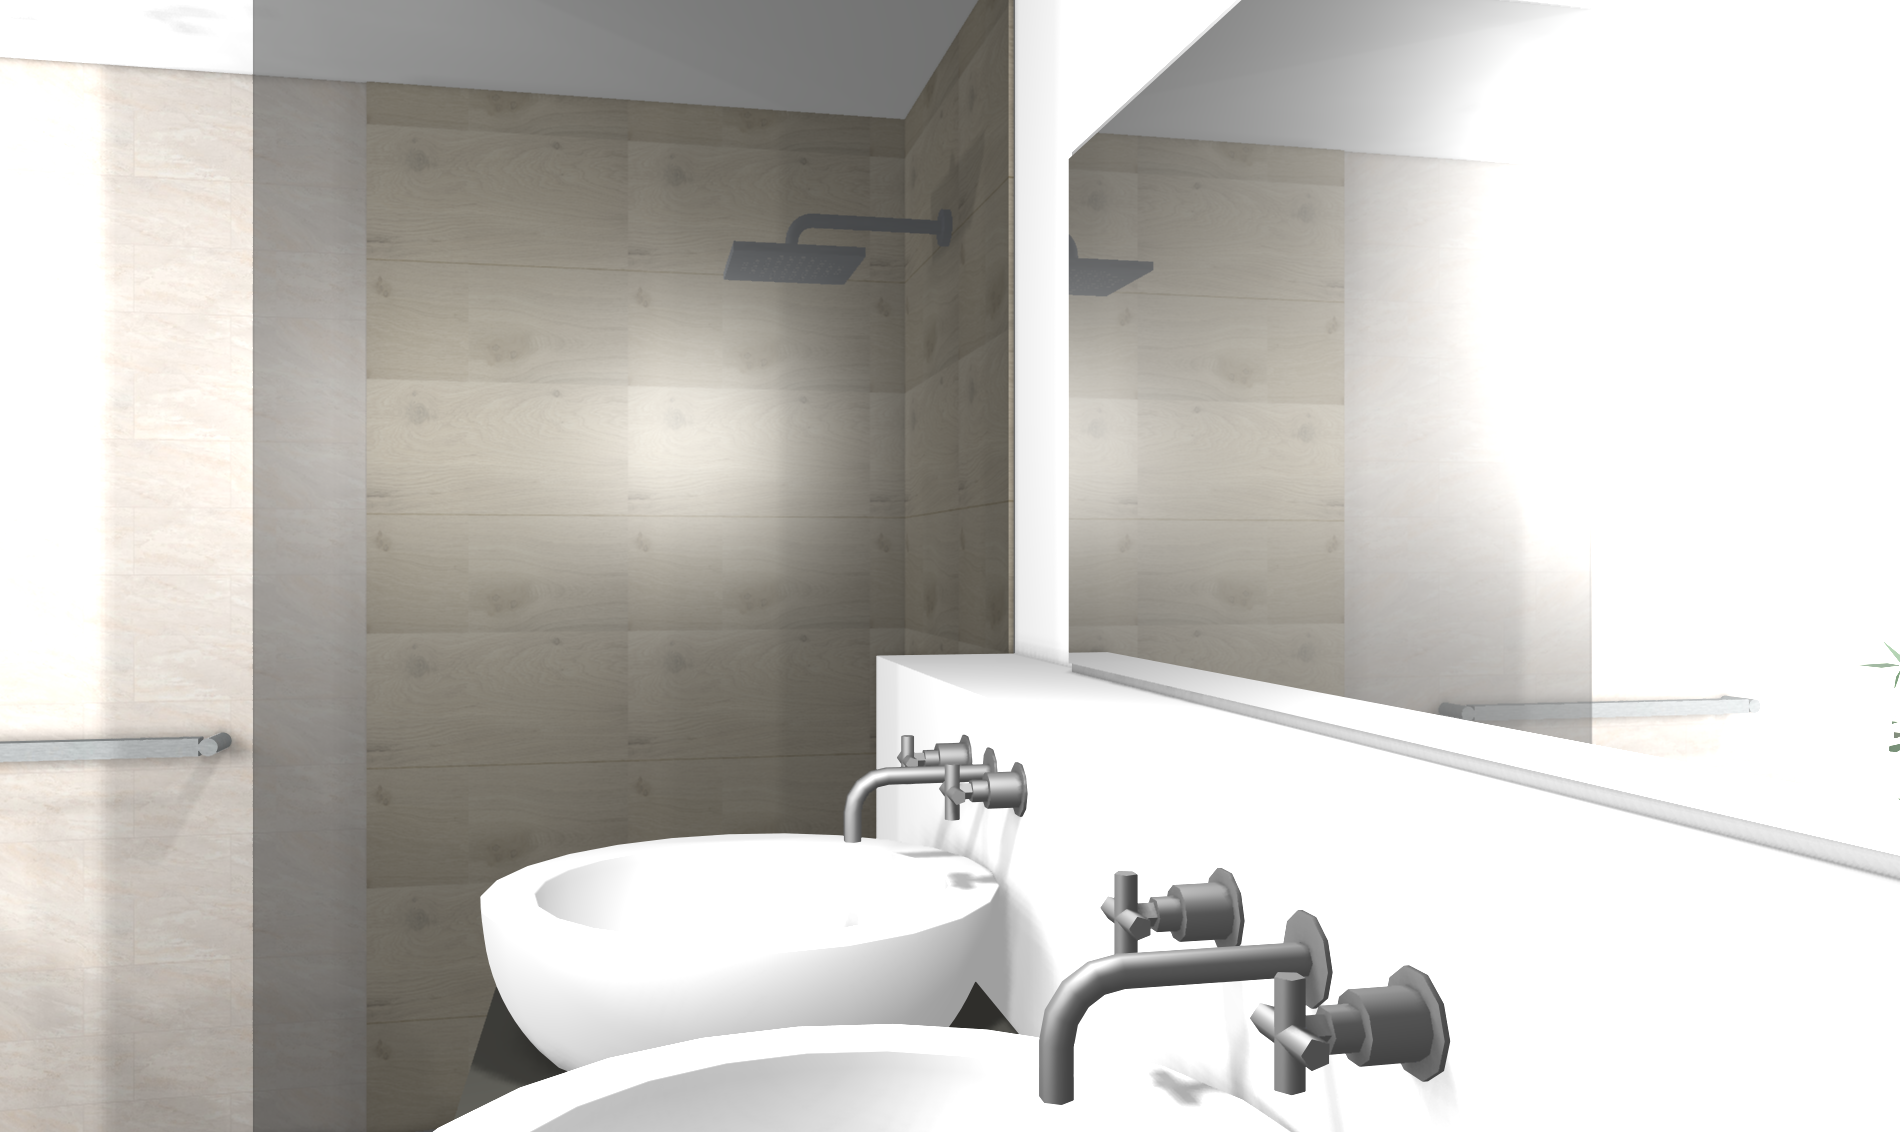 Modernes Badezimmer mit freistehender Badewanne #badezimmer ©www.wohnly.com